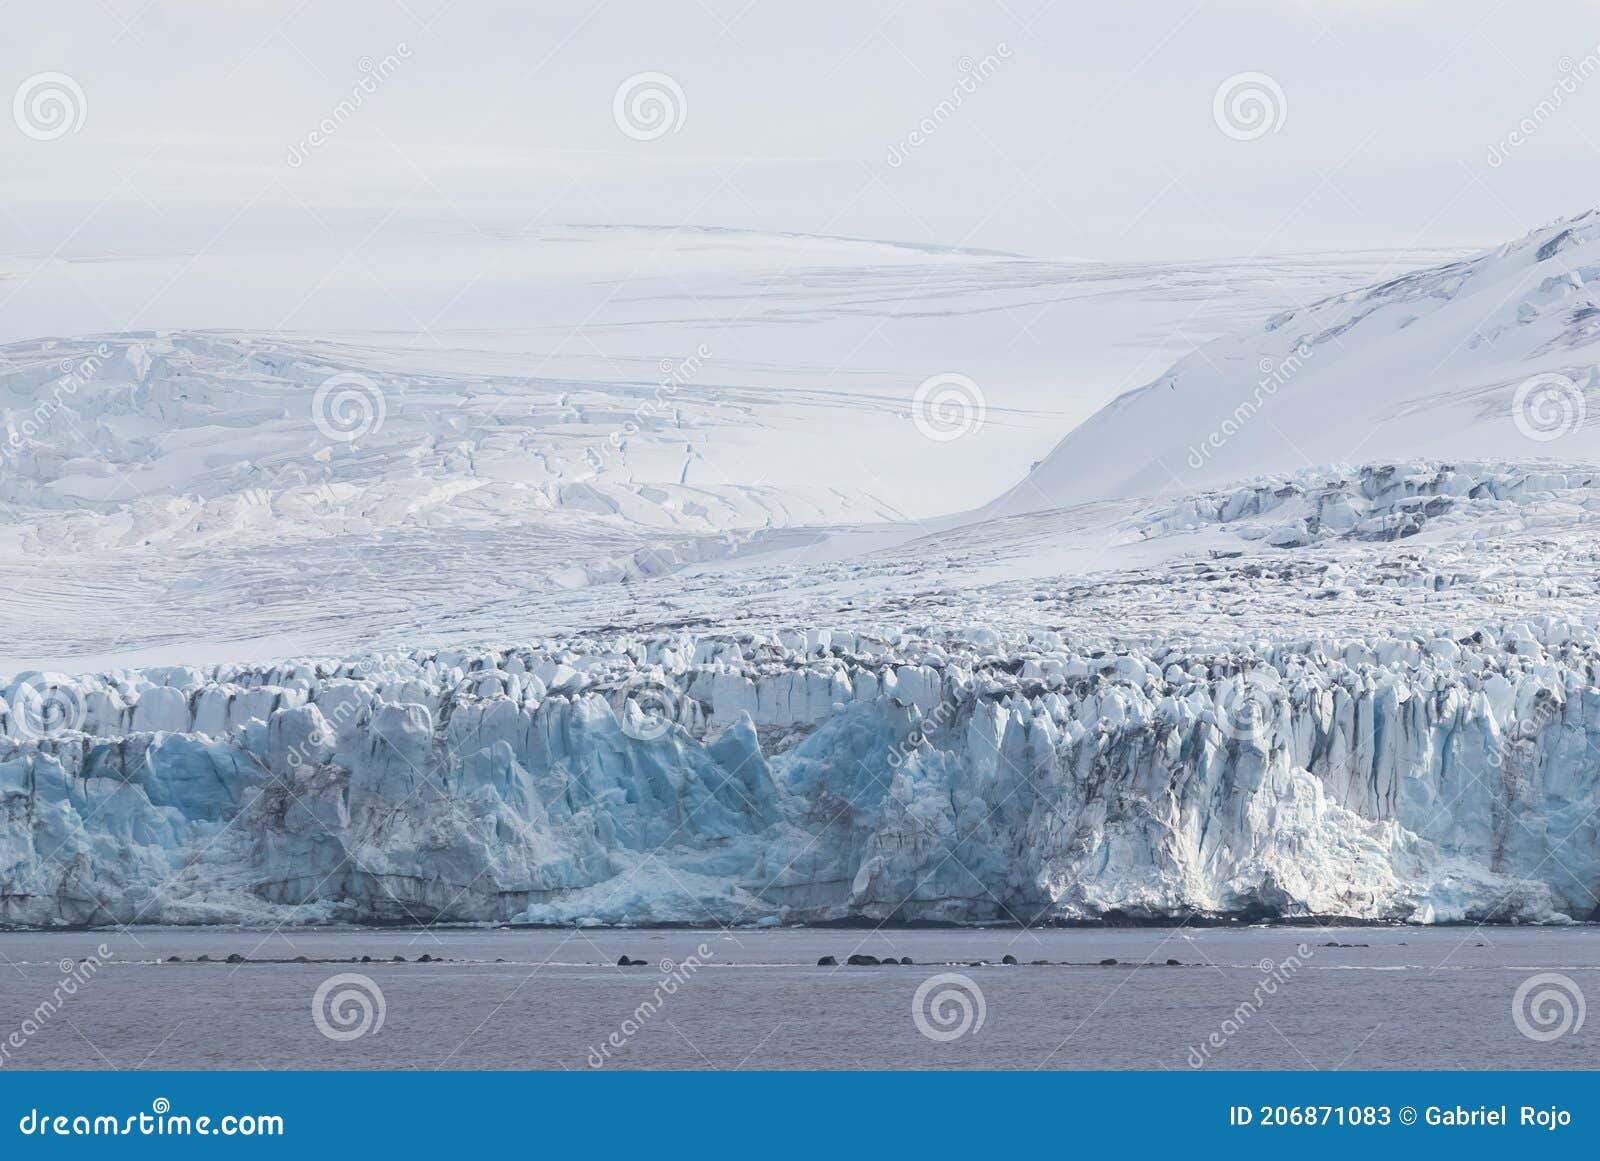 glacier in antÃÂ¡rtica, south shetland